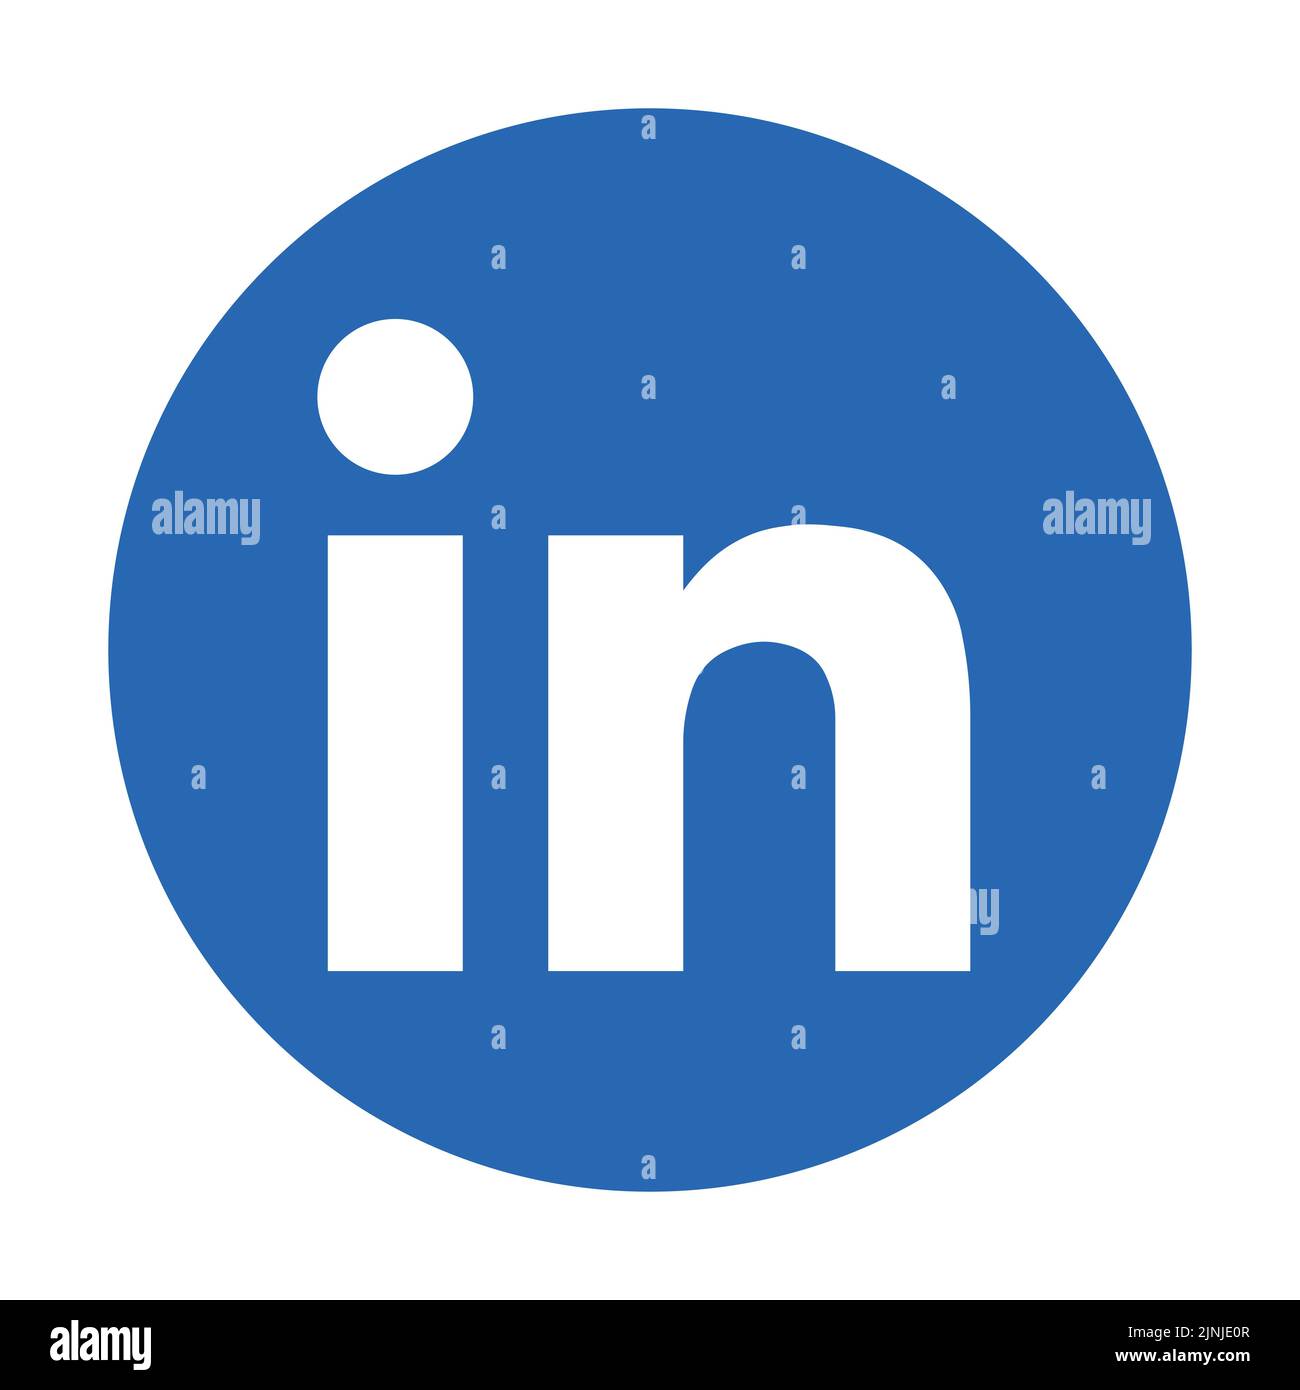 LinkedIn social media app icon Stock Vector